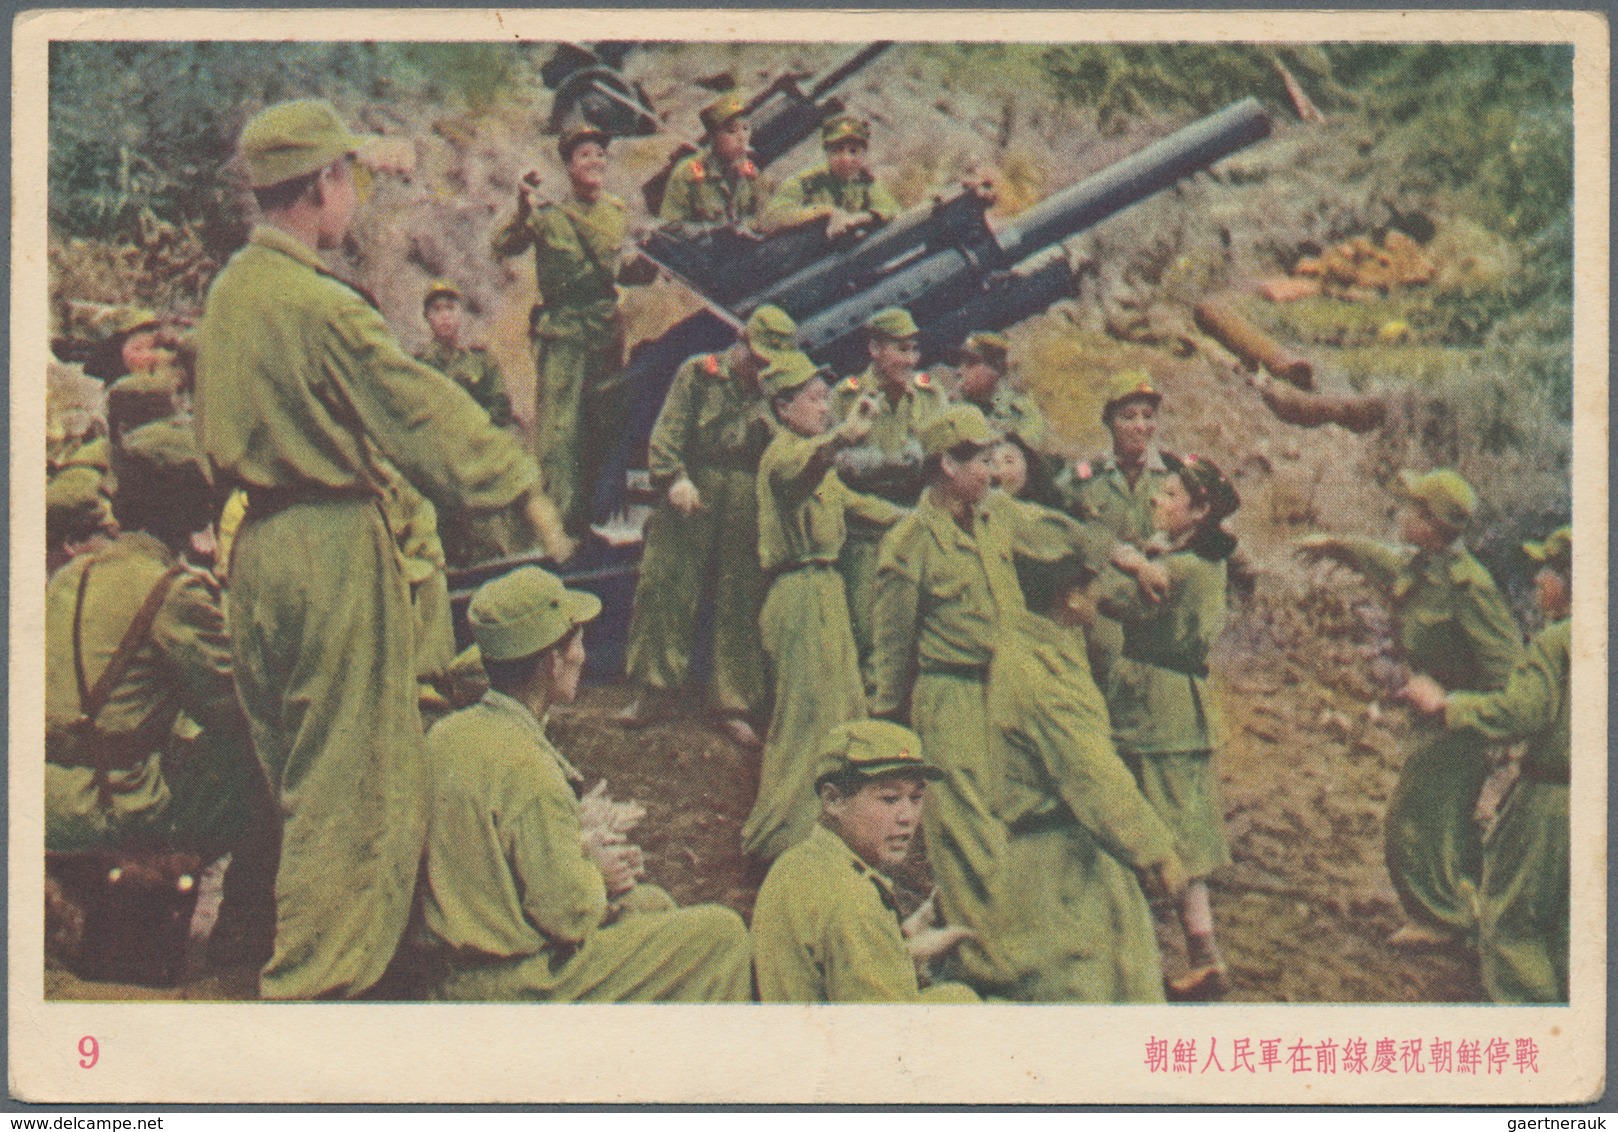 China - Volksrepublik - Ganzsachen: 1953, war envelope No. 4 resp. war ppc 1/10, unused, some w. sli